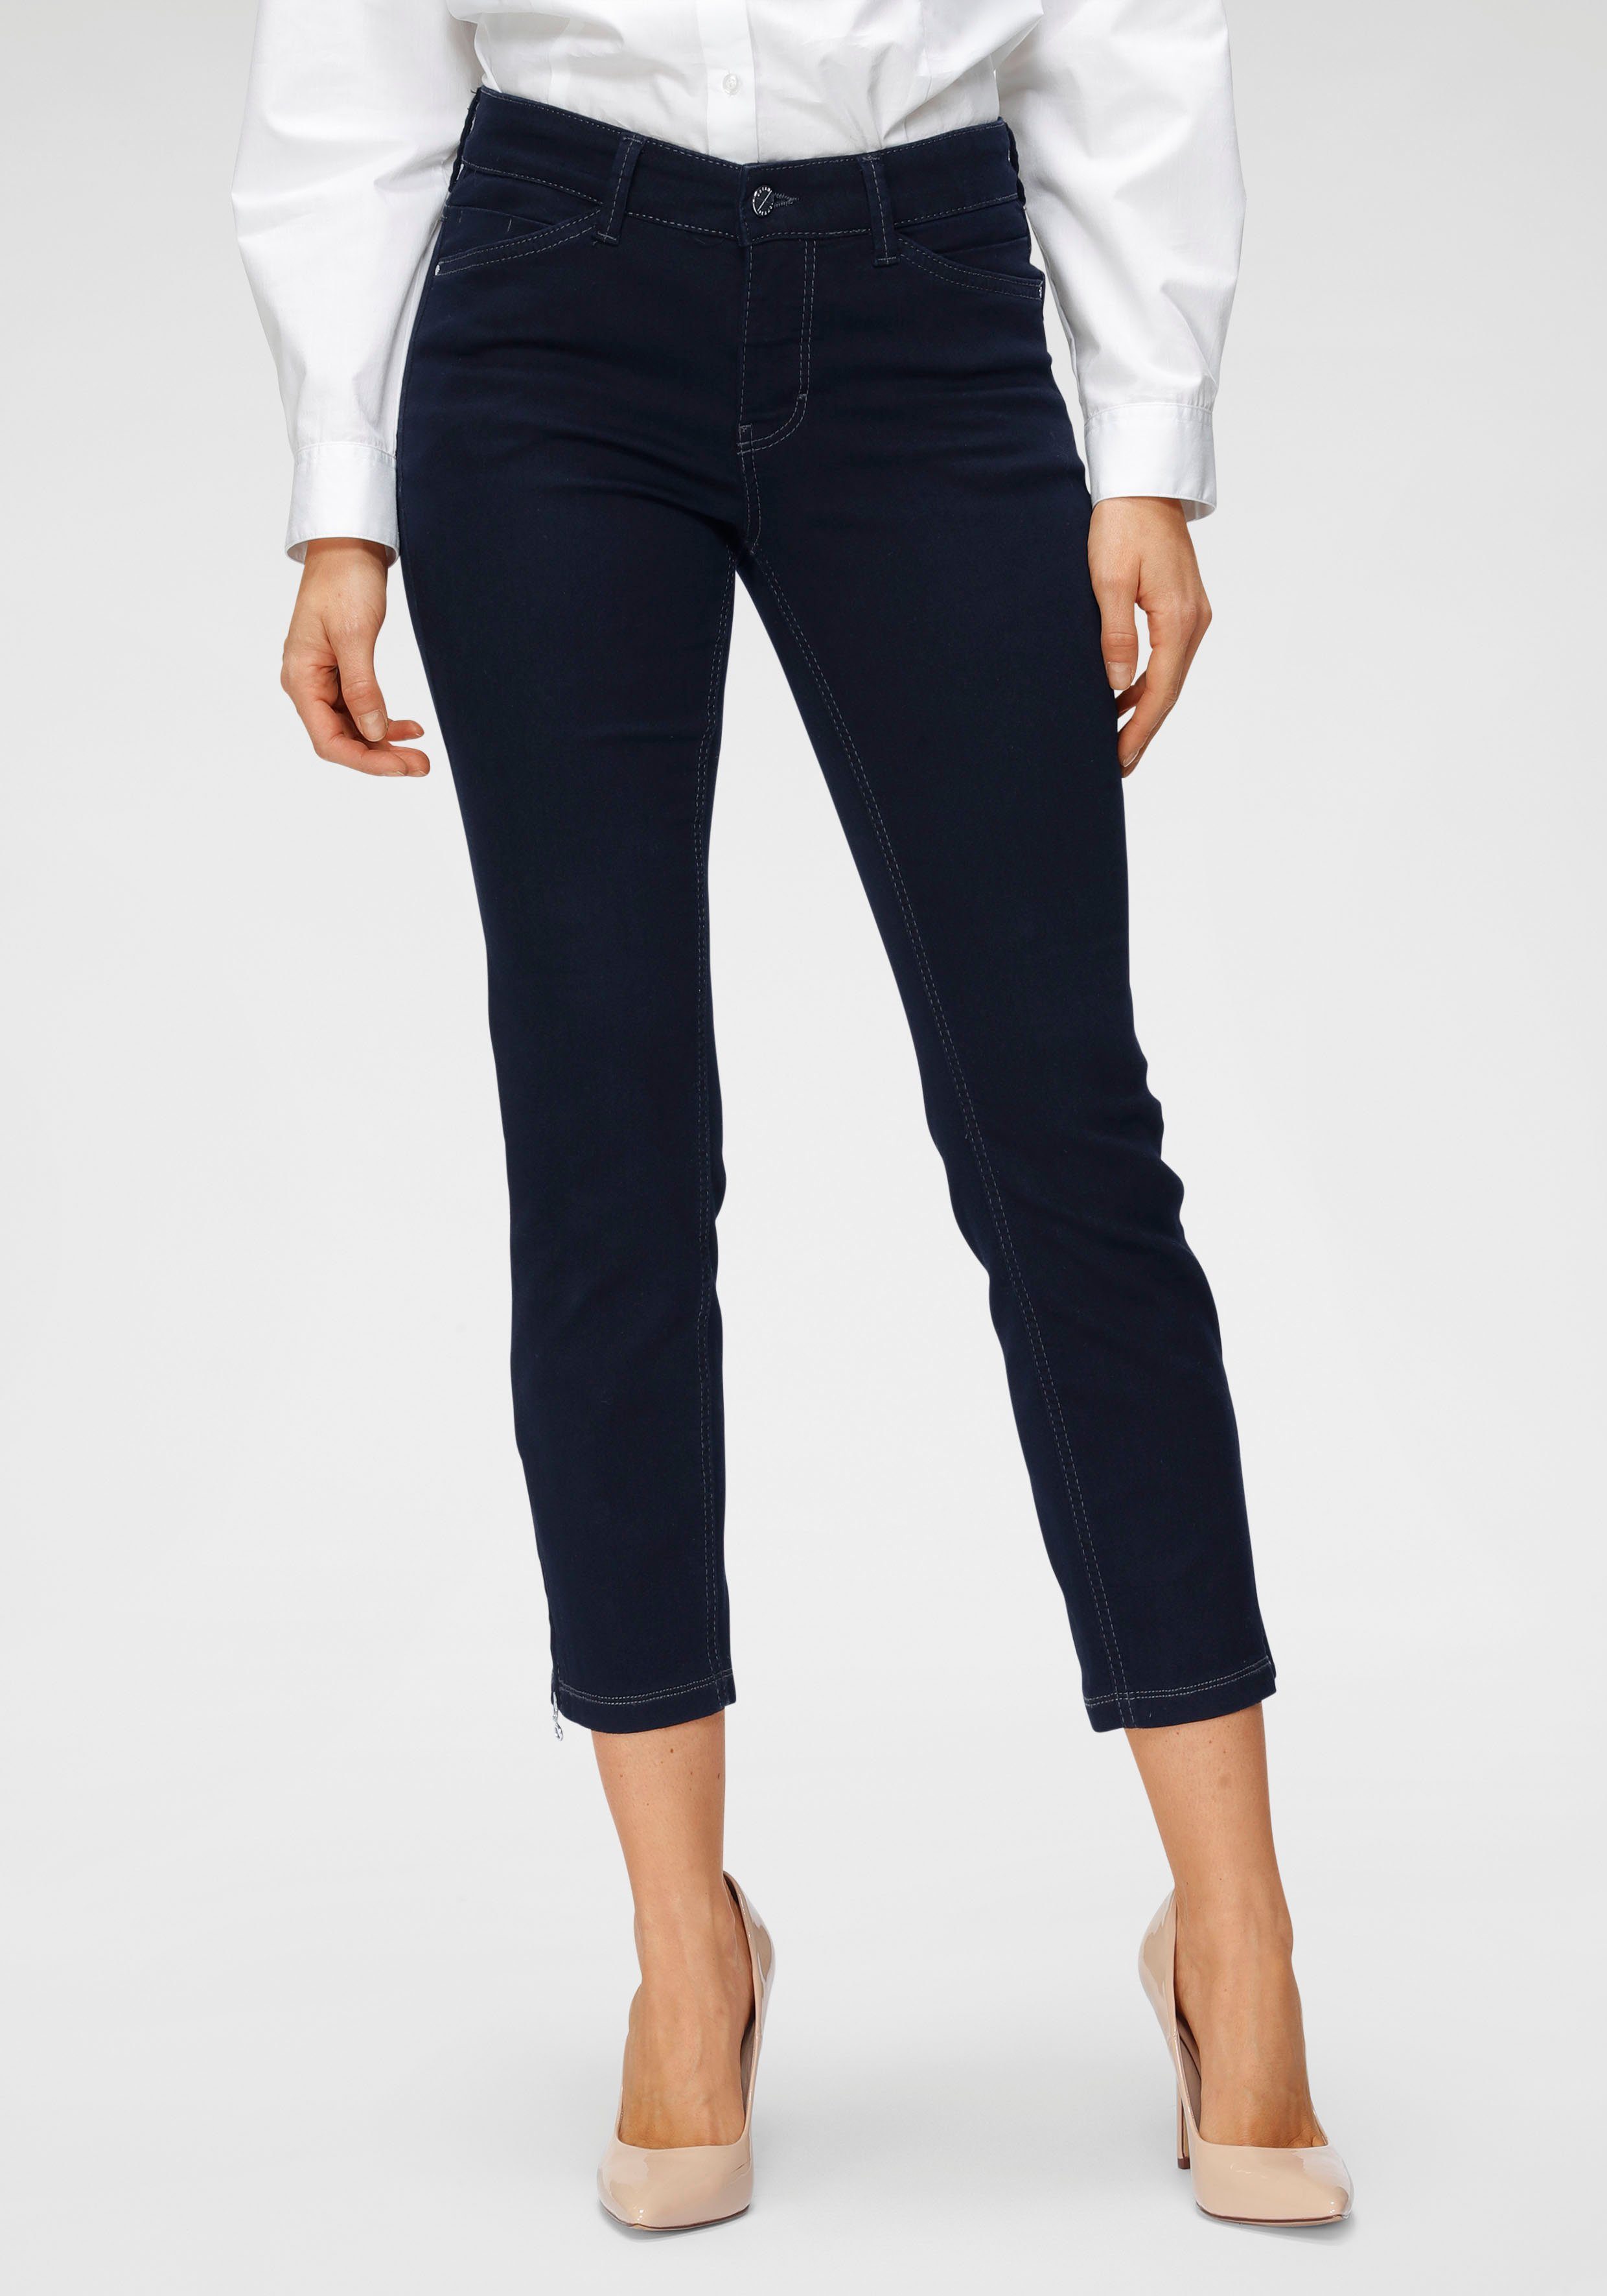 7-8-jeans, inchlengte 27 Van Mac denim